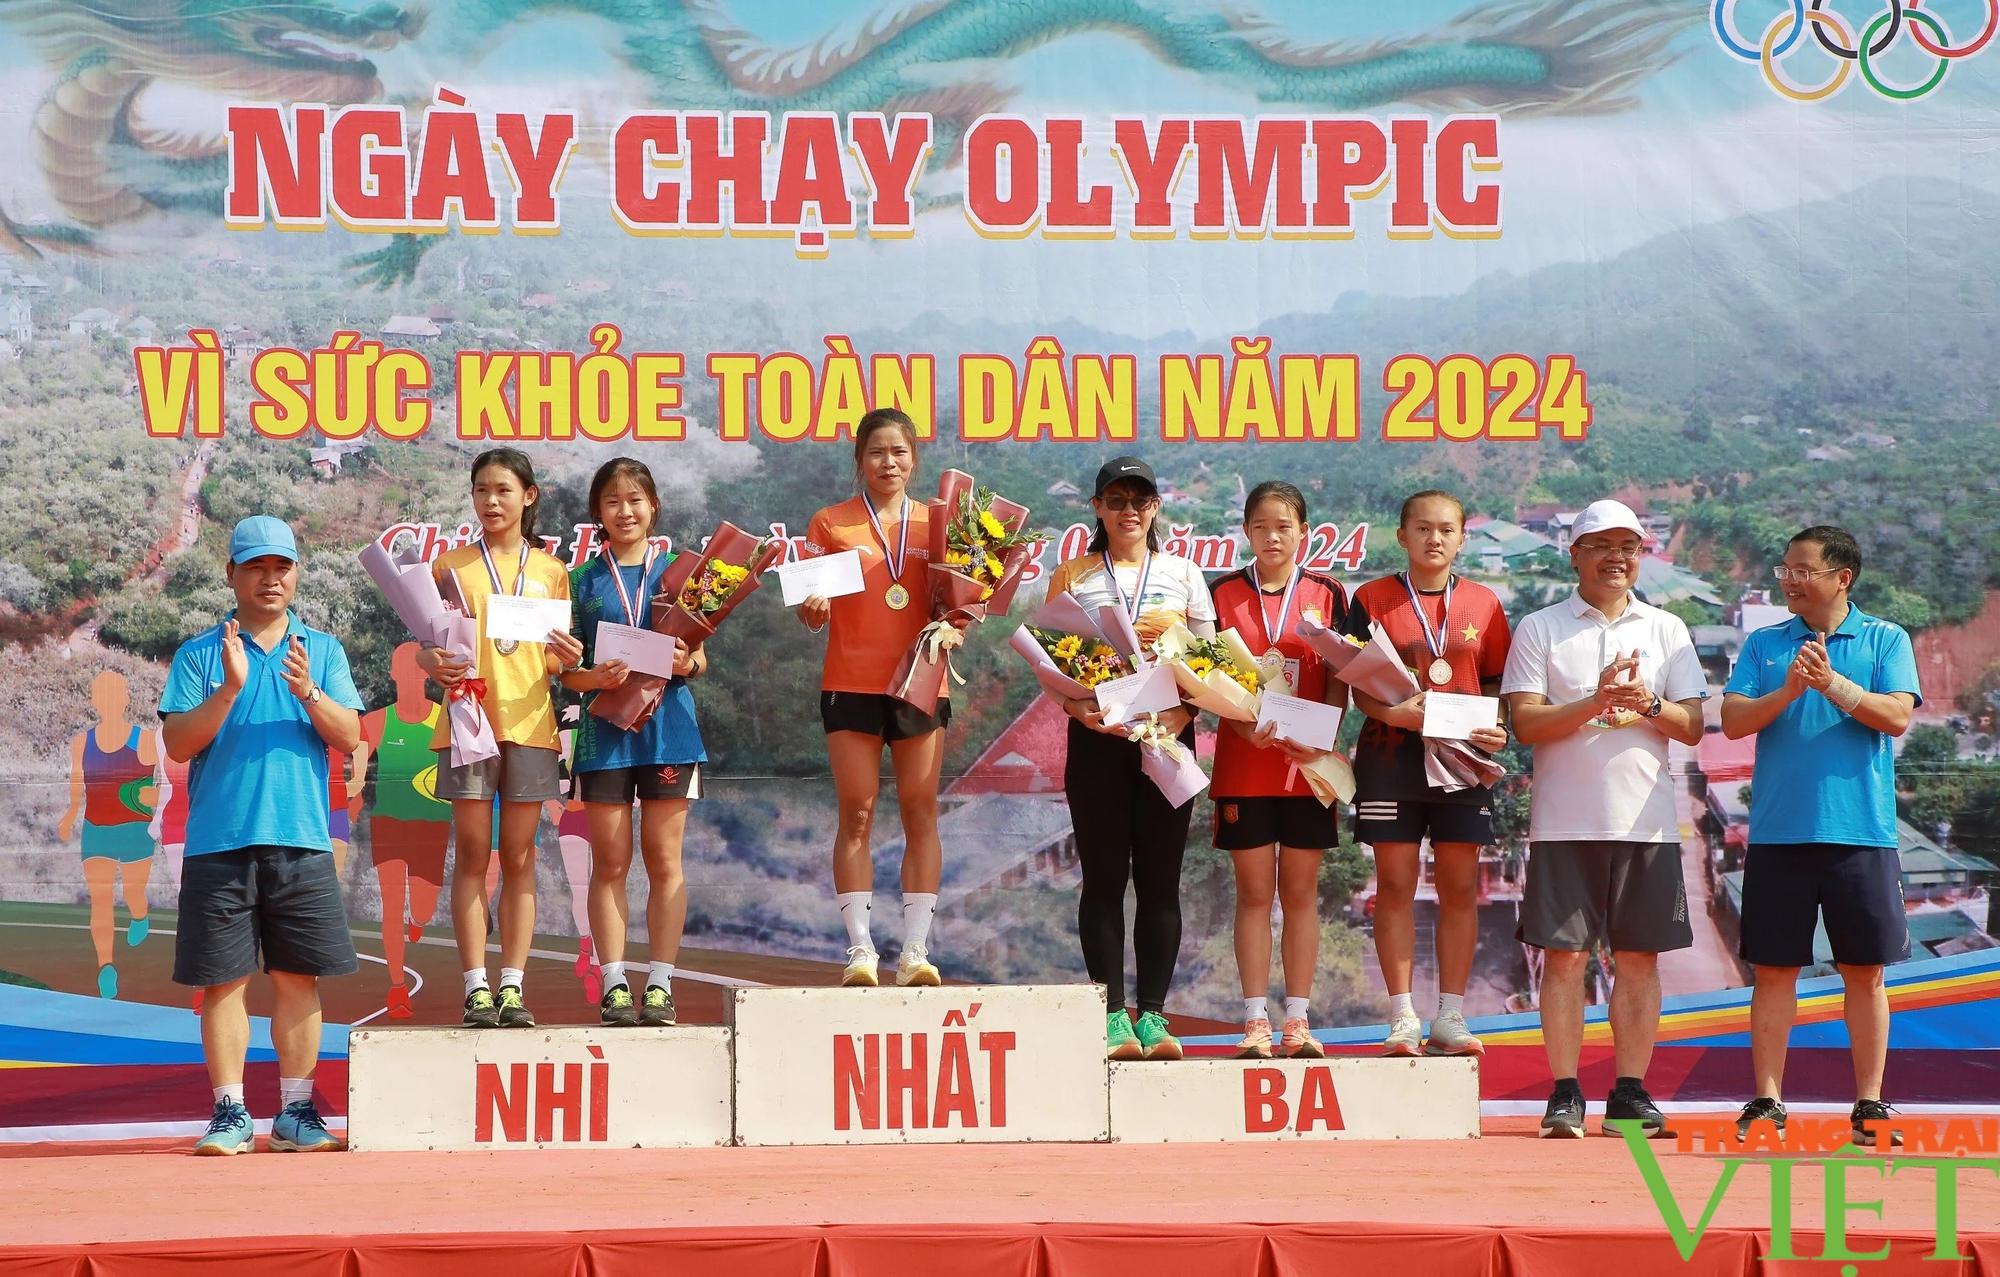 Trên 3.000 VĐV tham ra chạy Olympic vì sức khỏe toàn dân năm 2024- Ảnh 12.